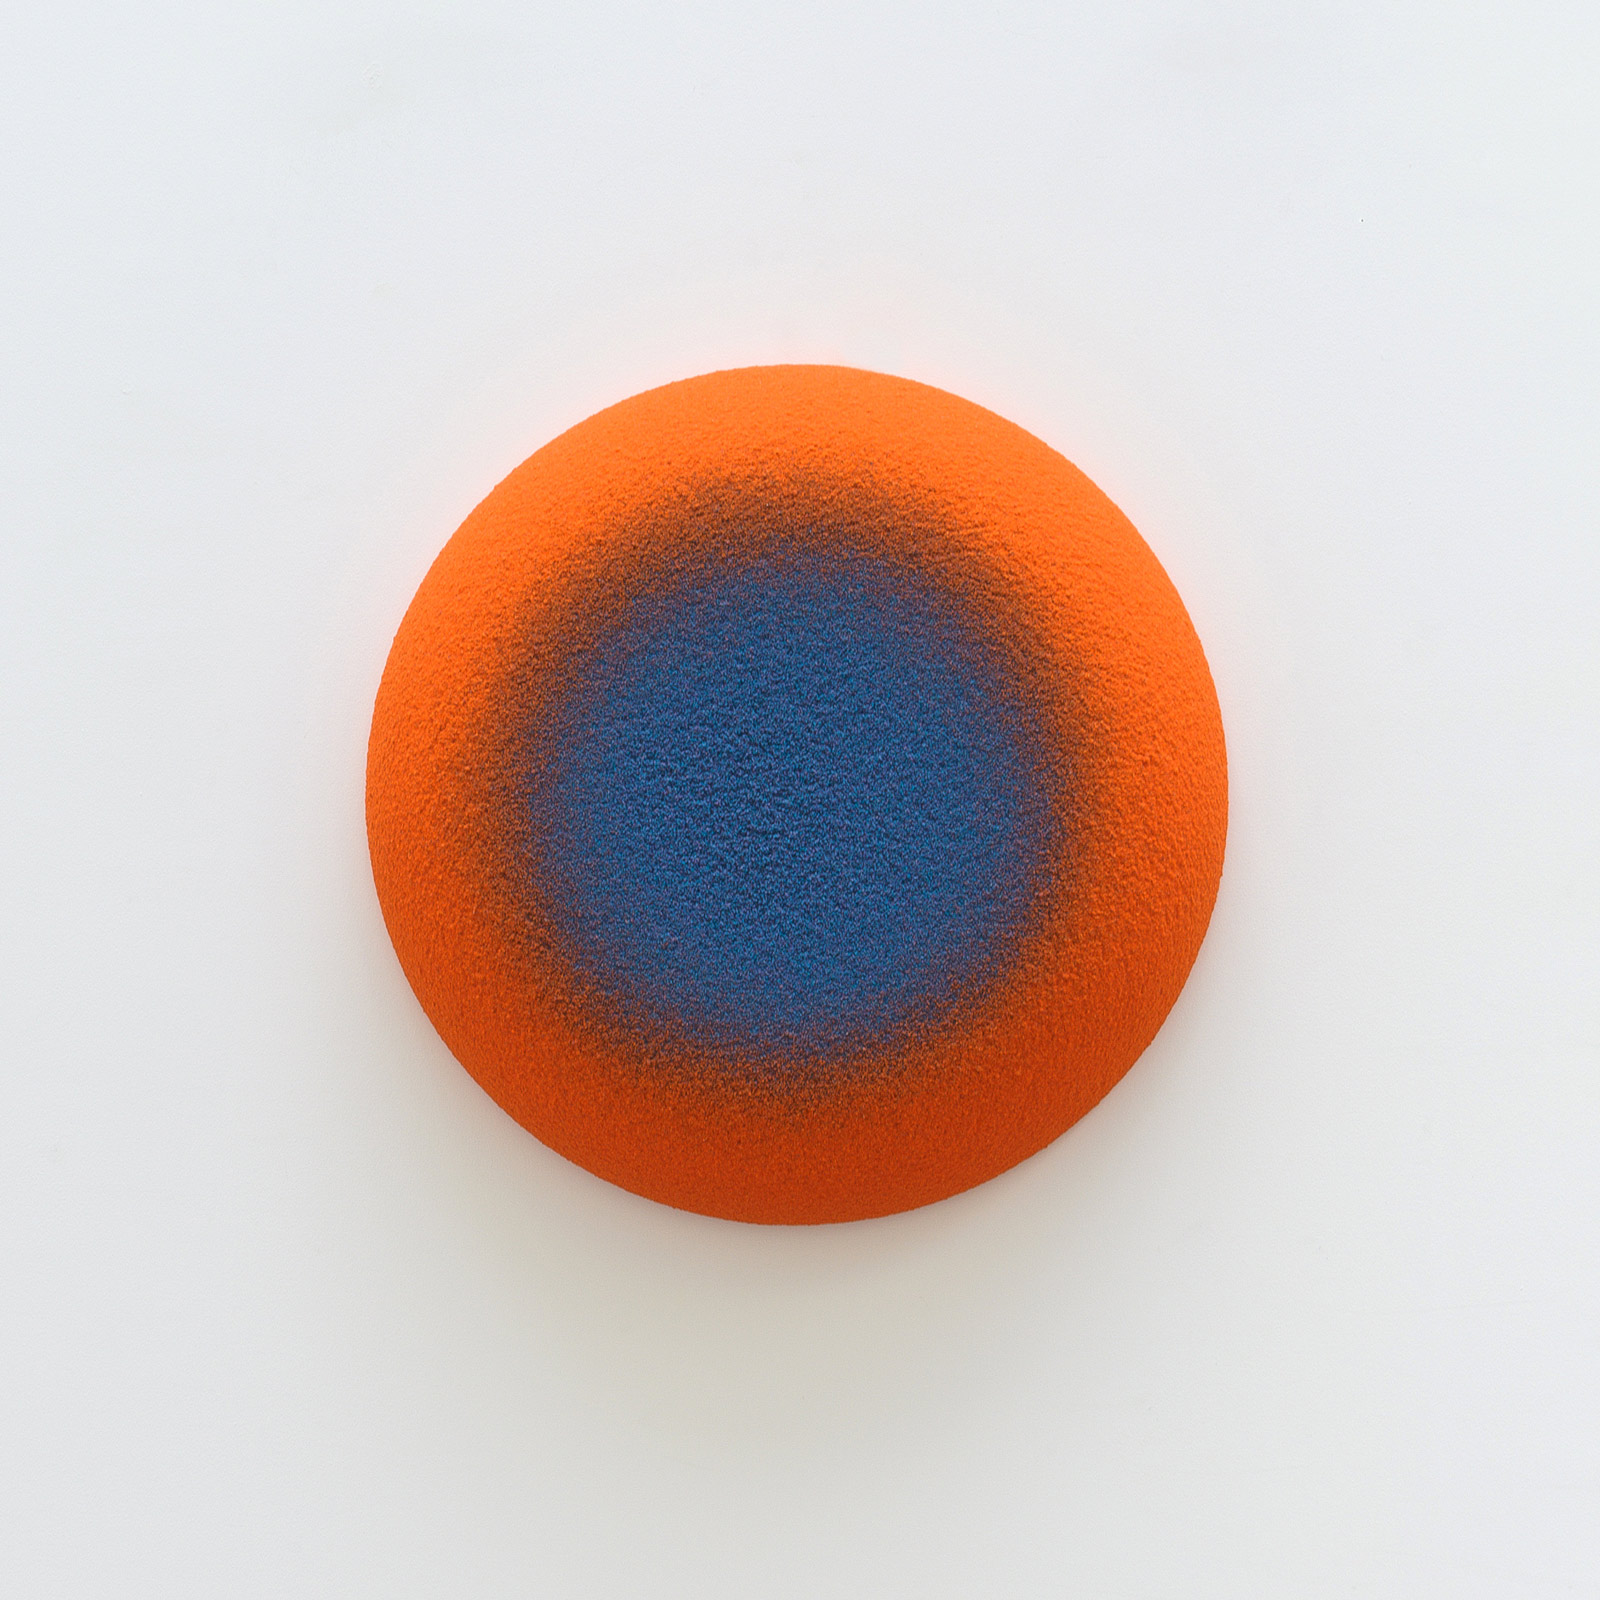 Vincent BEAURIN Spot Bleu Orange, 2012.